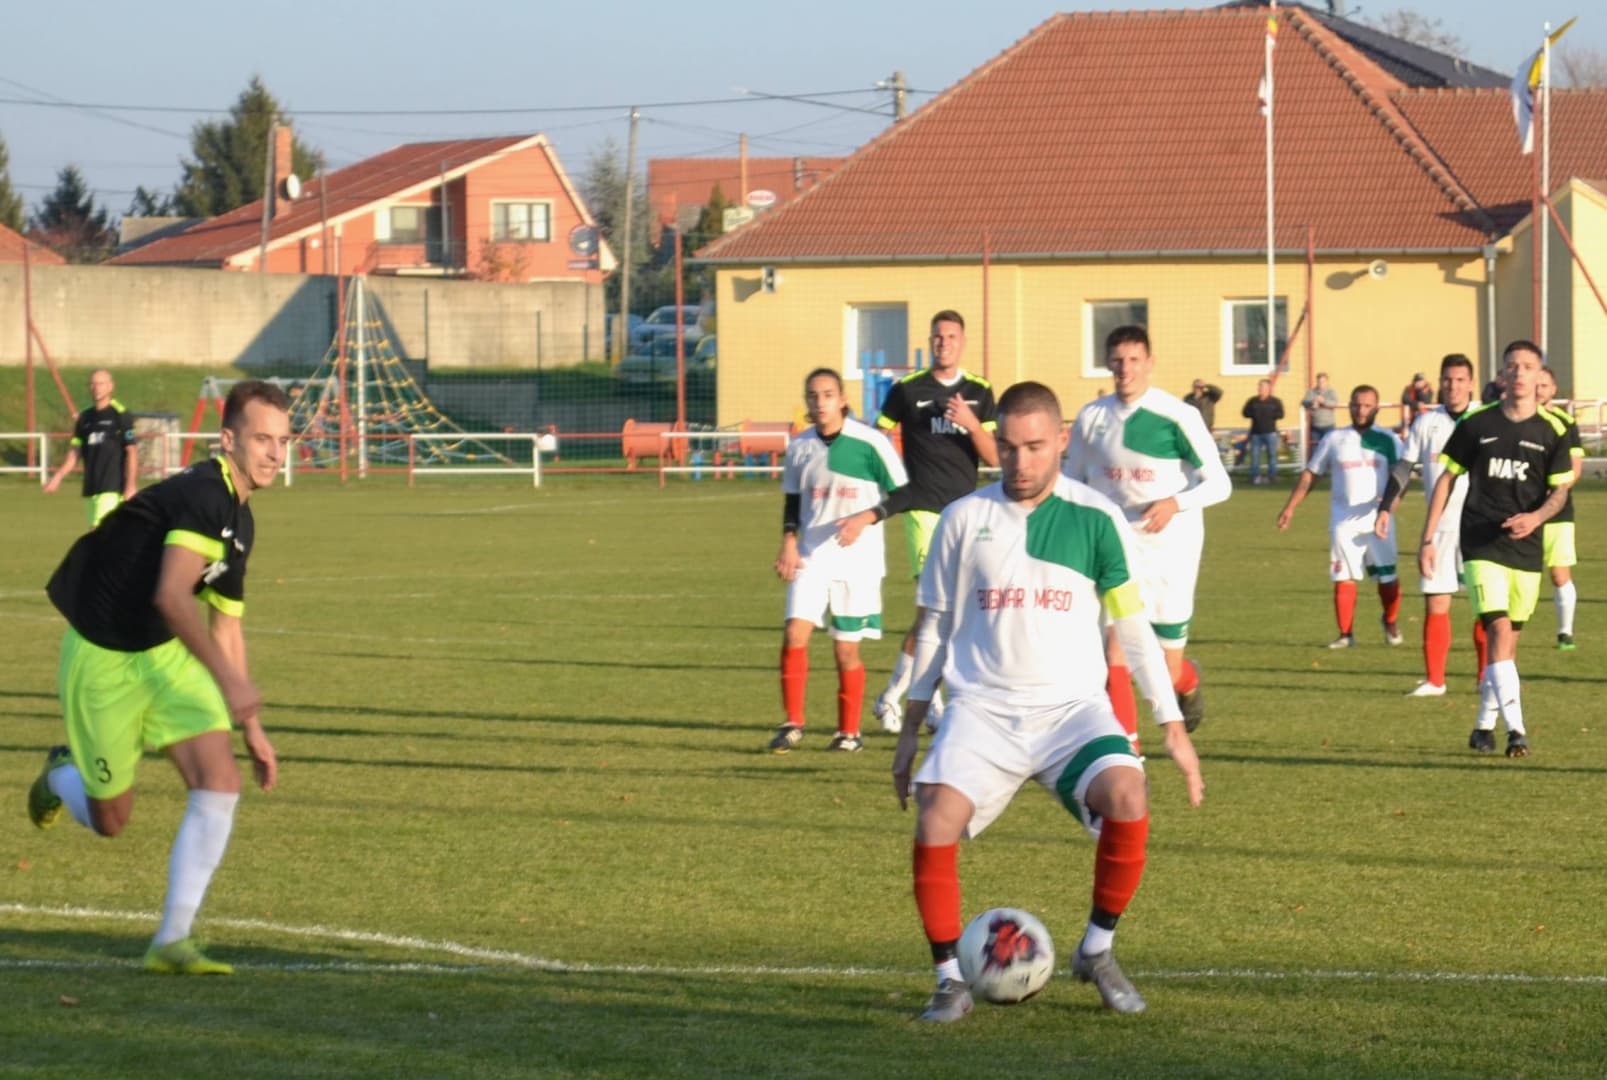 Nyugat-szlovákiai V. liga, Déli csoport, 14. forduló: Kilencet vágtak, élre álltak a nádszegiek